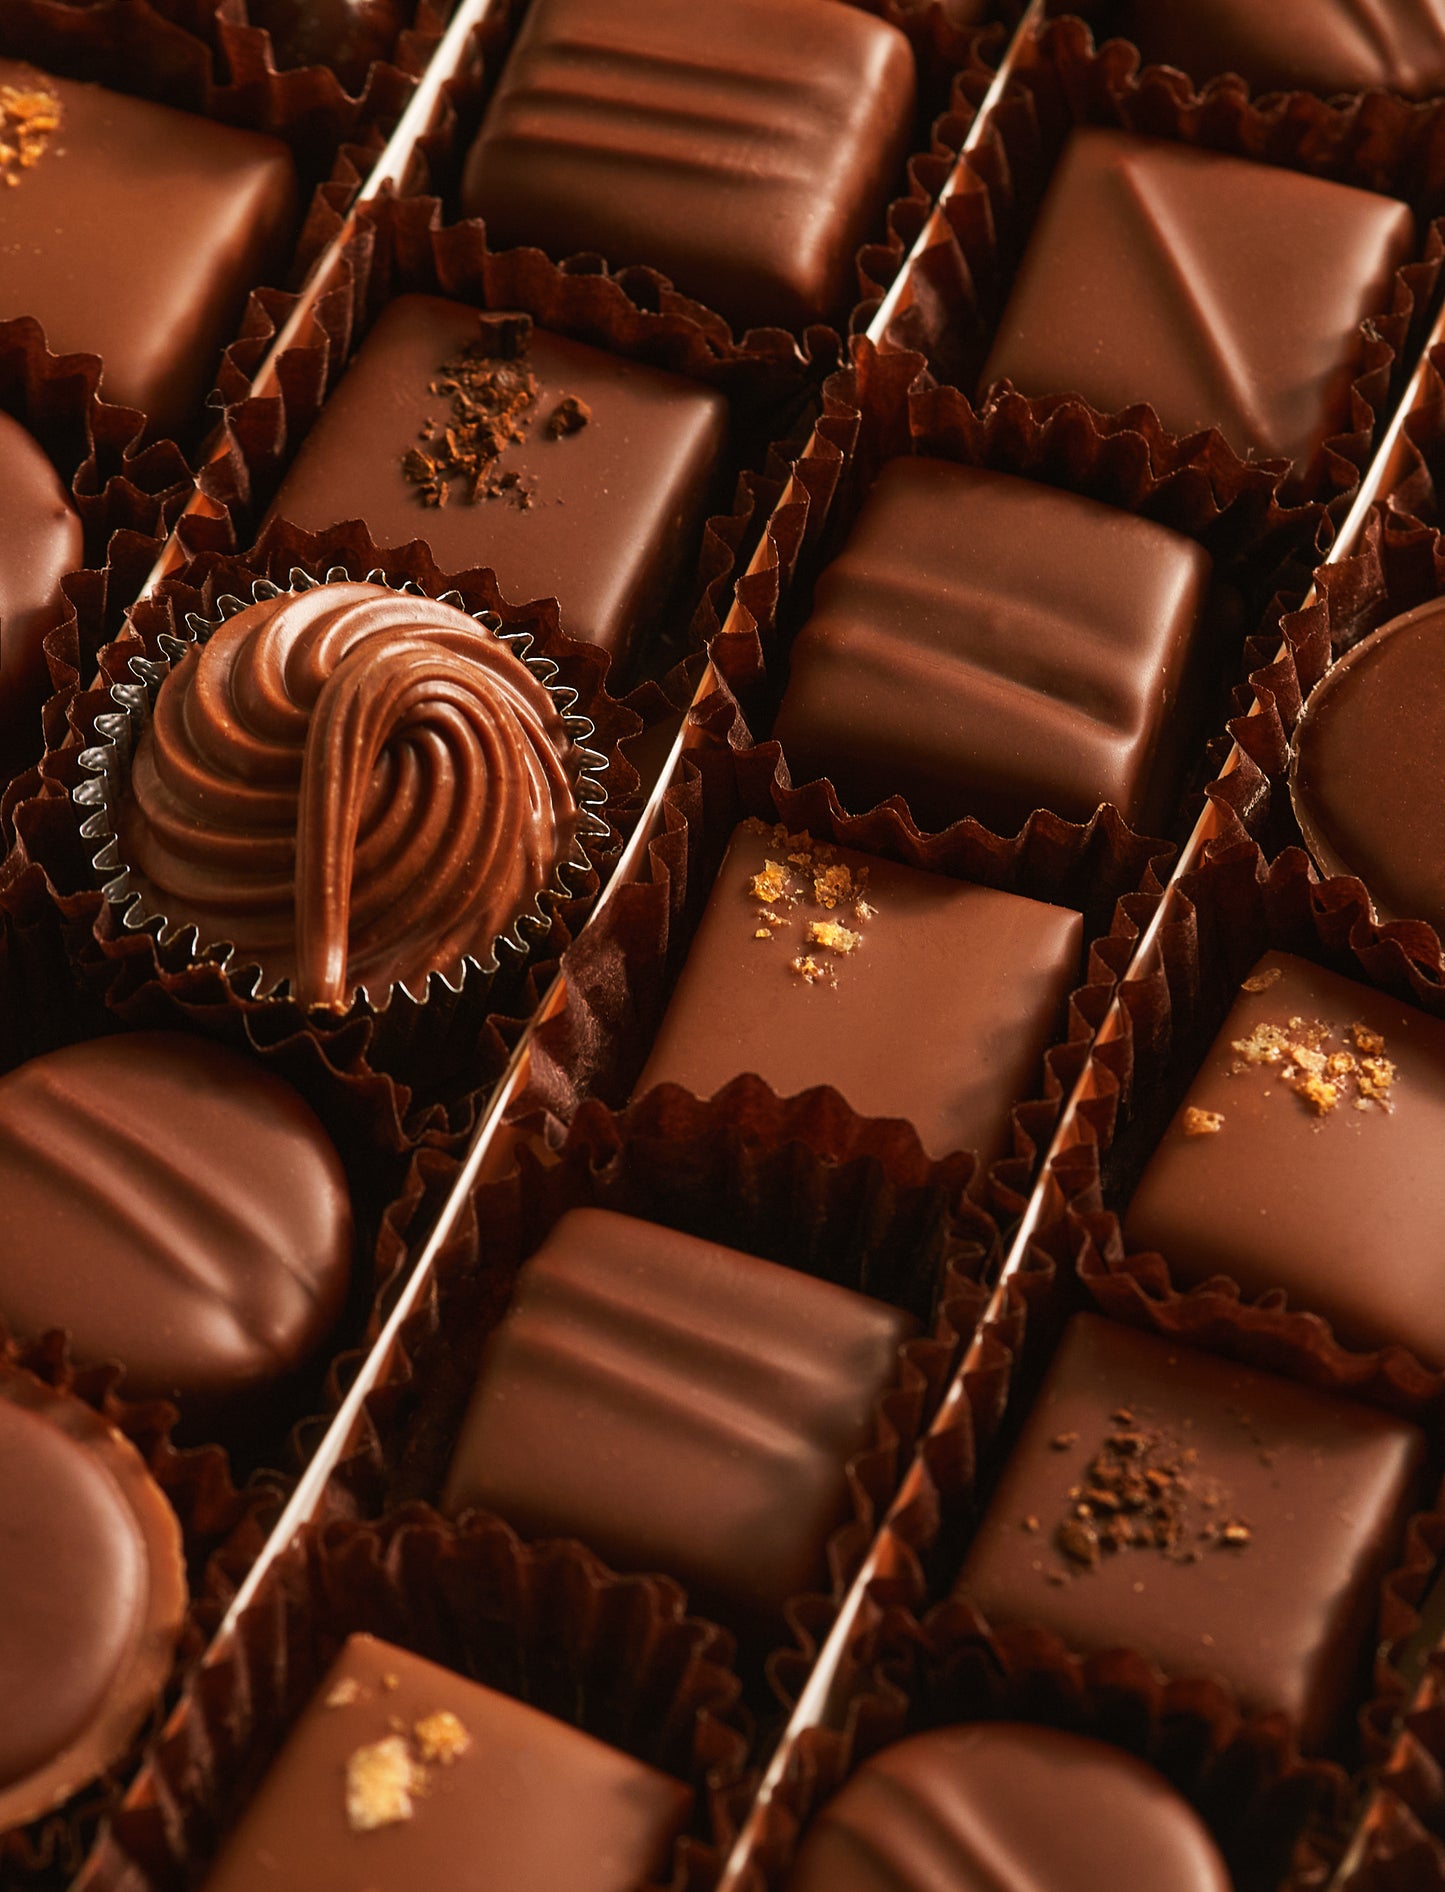 Les Laits (96 Chocolats)